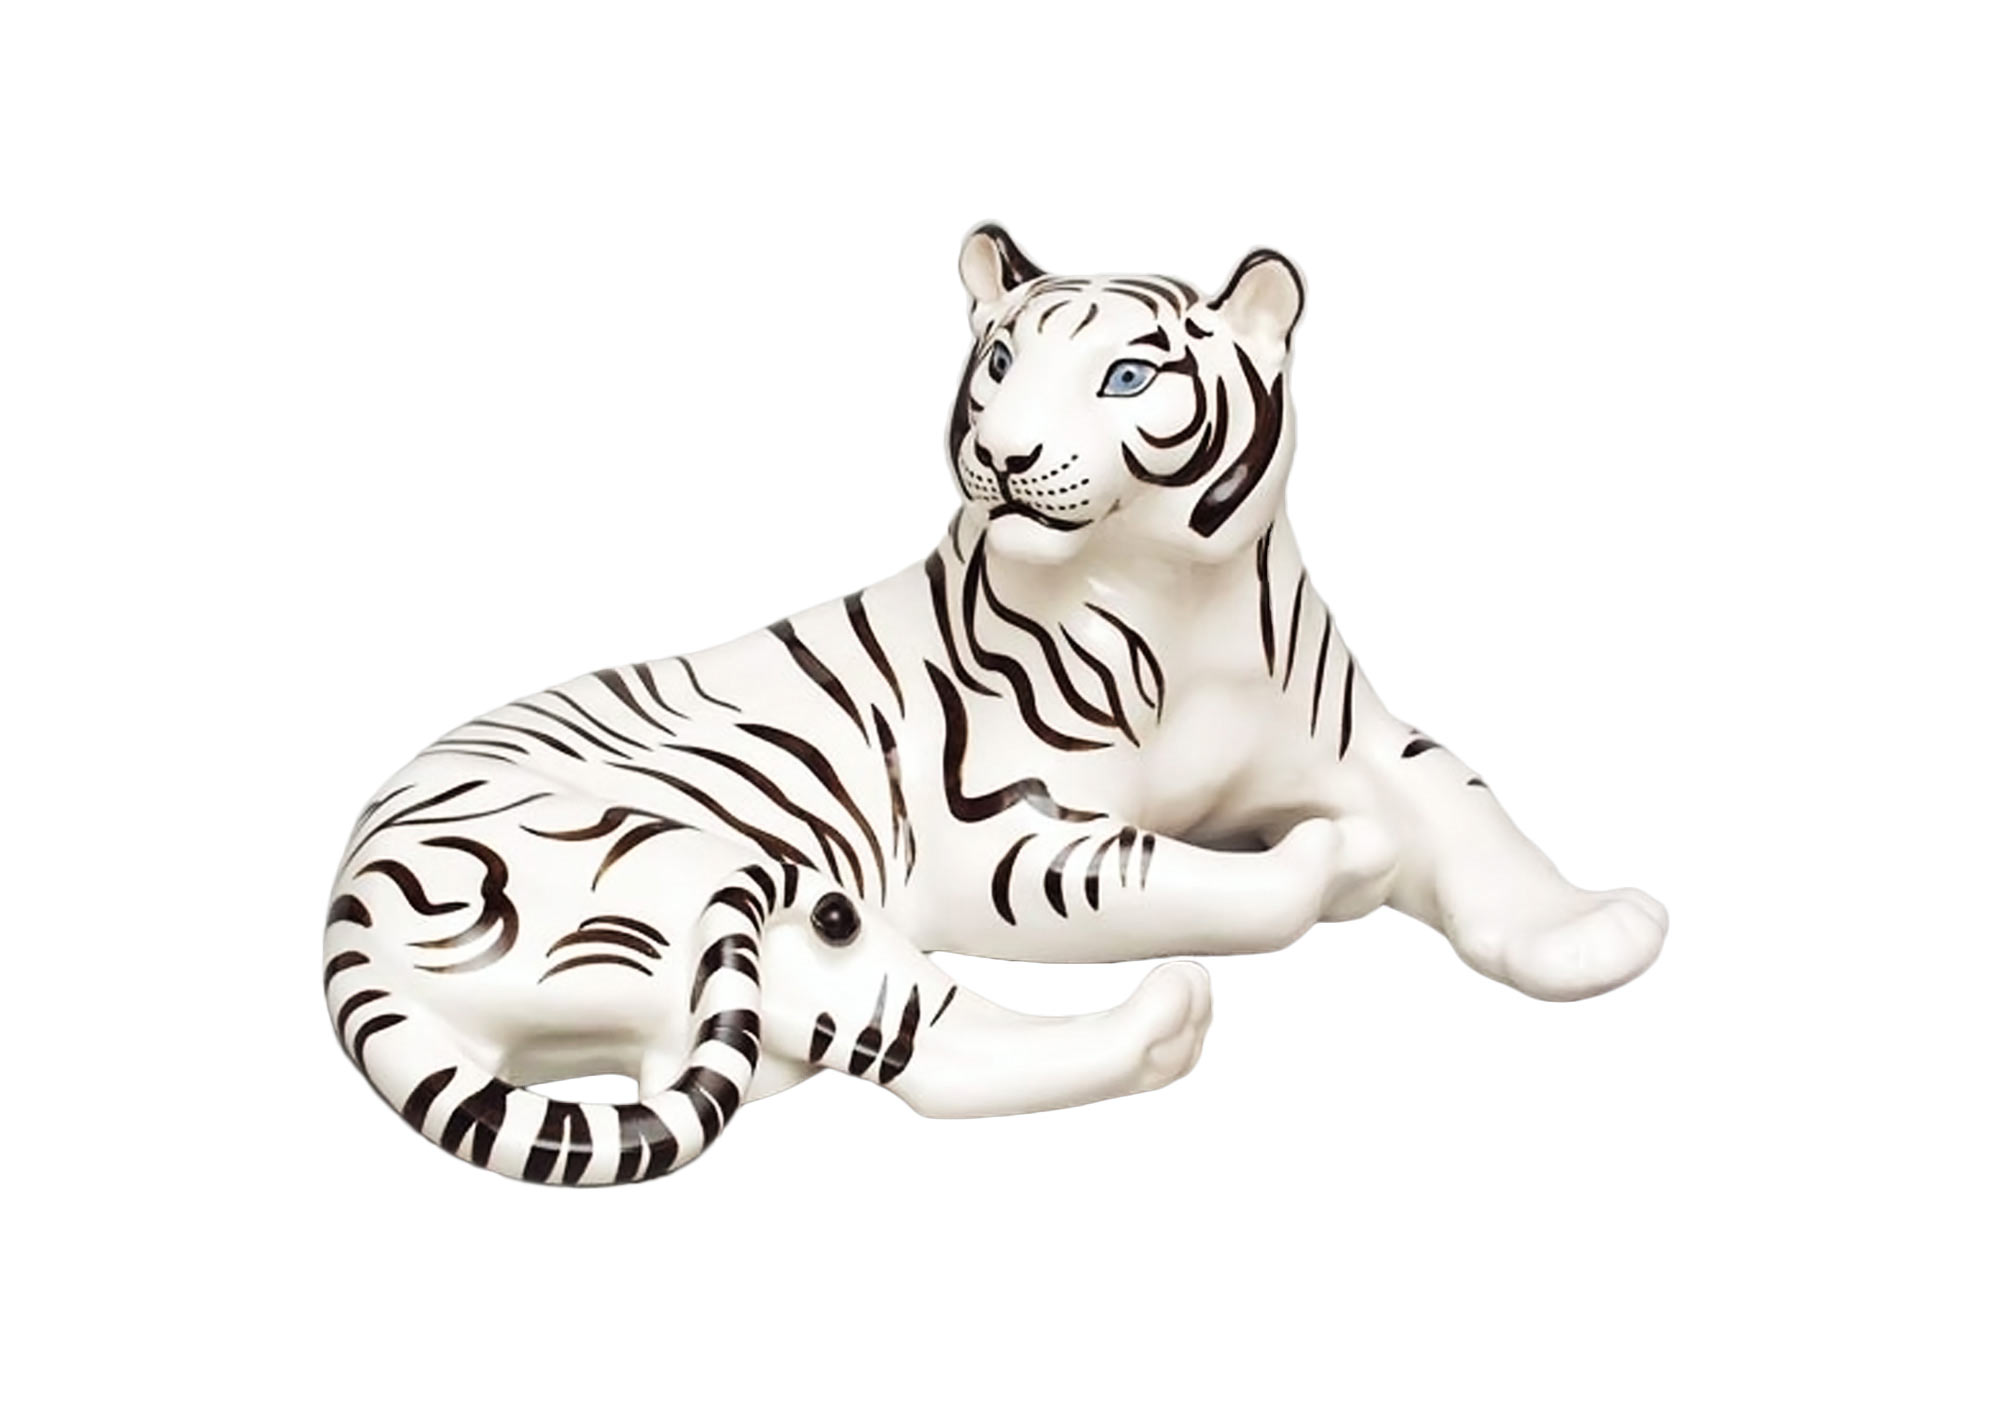 Buy Фарфоровая статуэтка "Черно-белый тигр" at GoldenCockerel.com